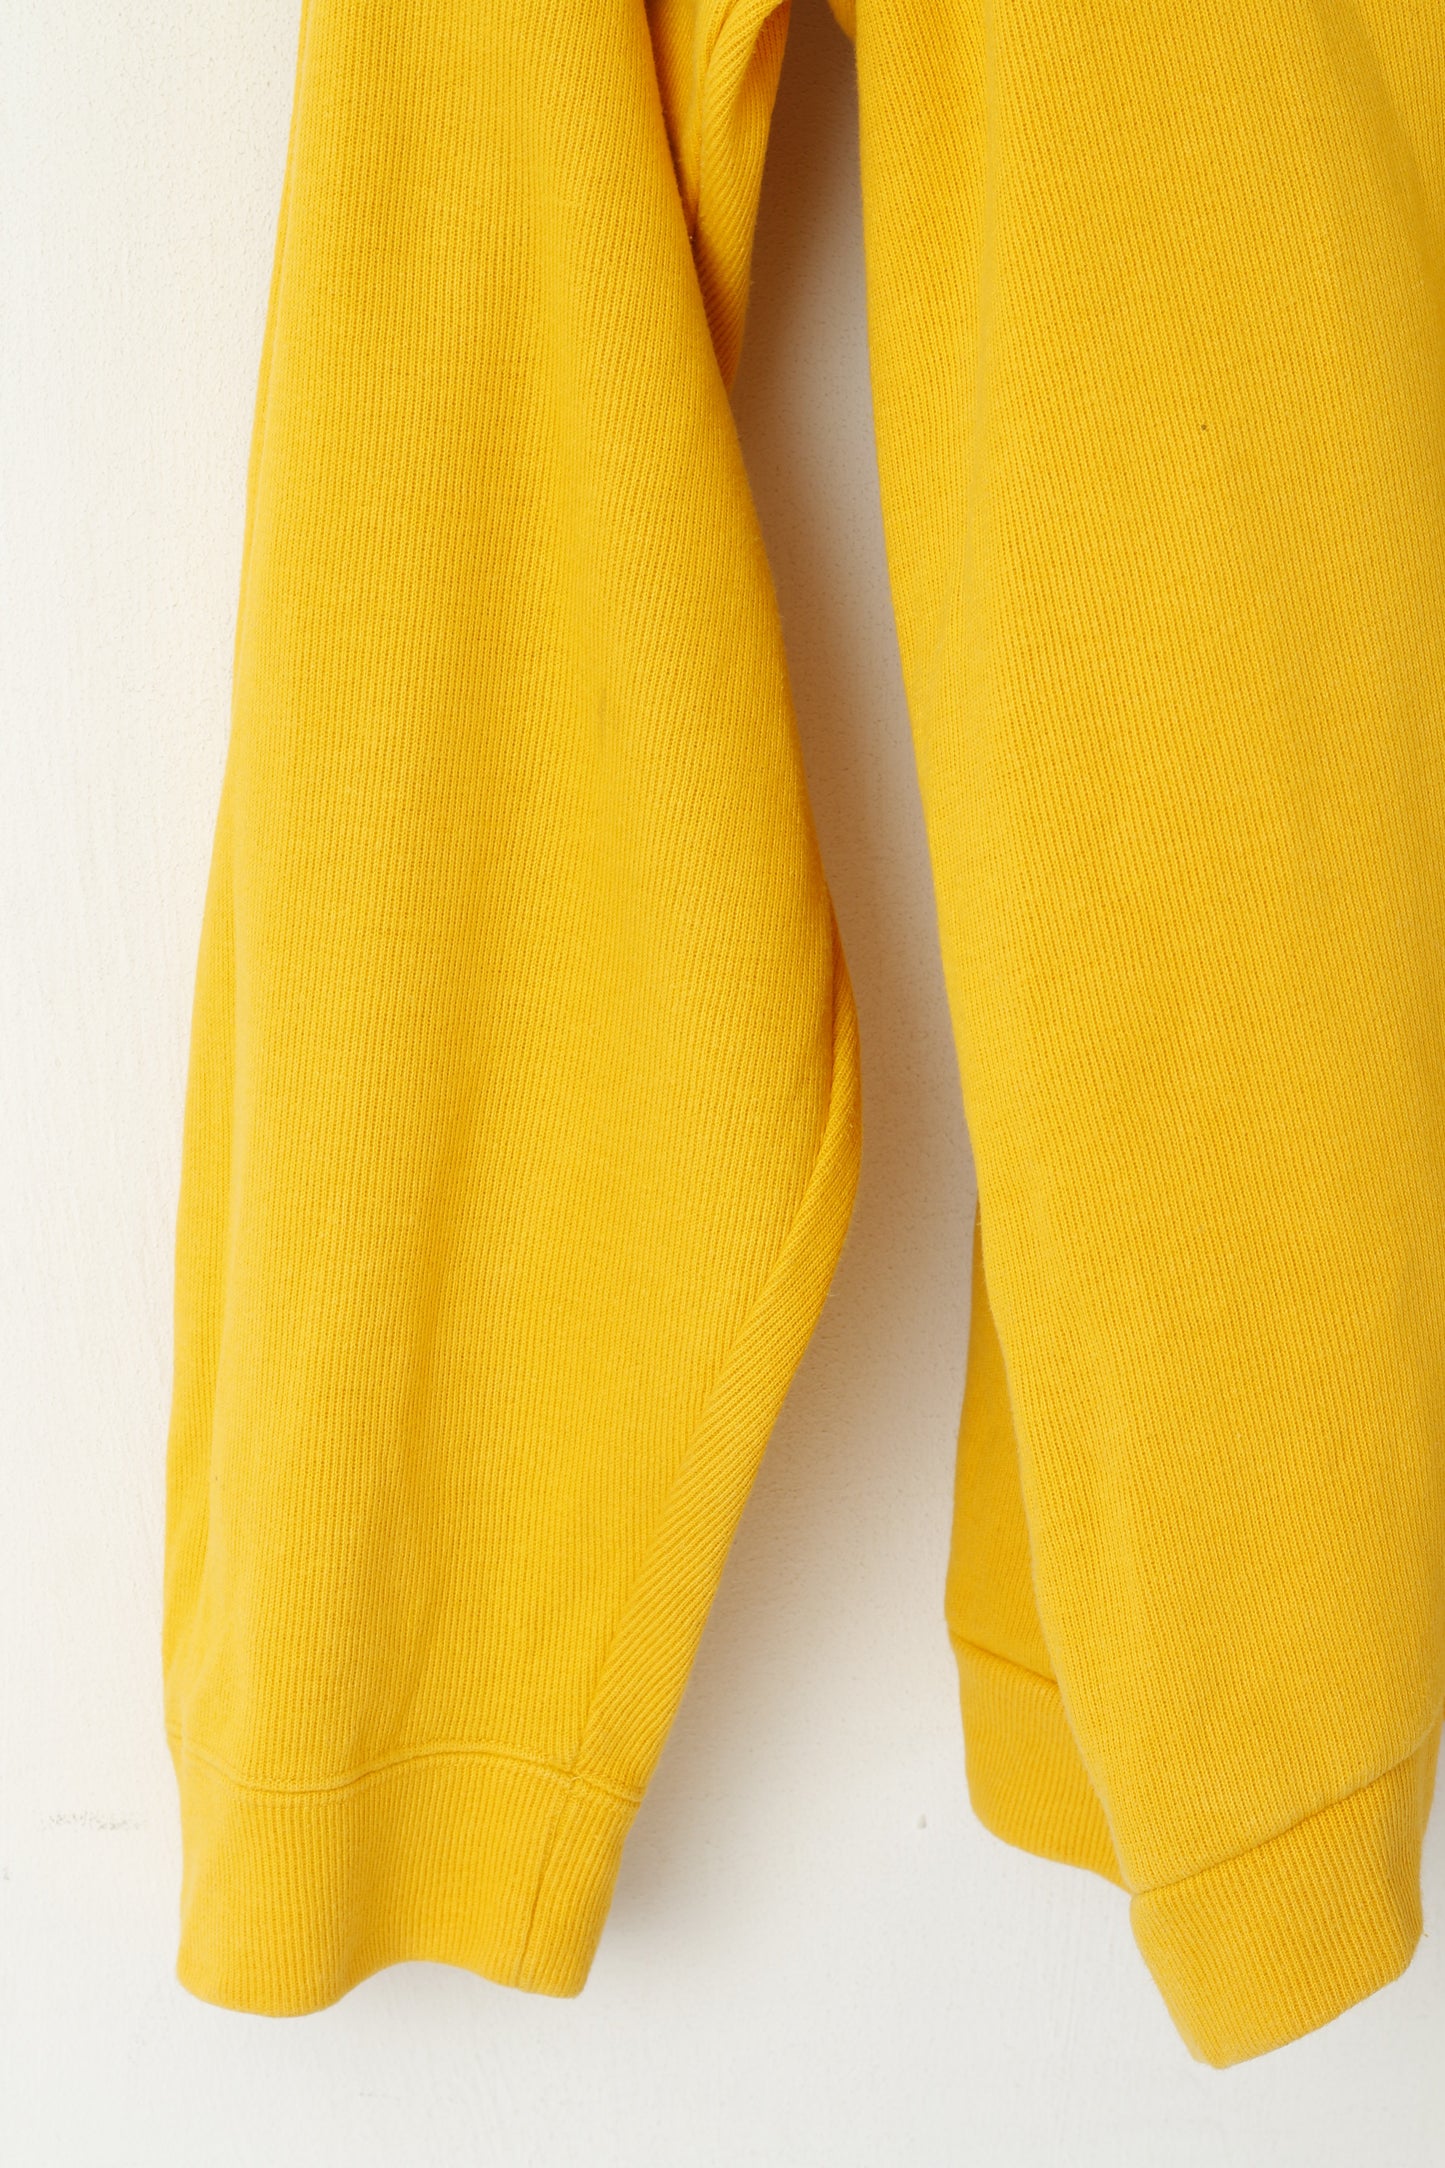 Columbia Sportswear Felpa da uomo L Felpa gialla in cotone con zip Collo Top sportivo vintage anni '90